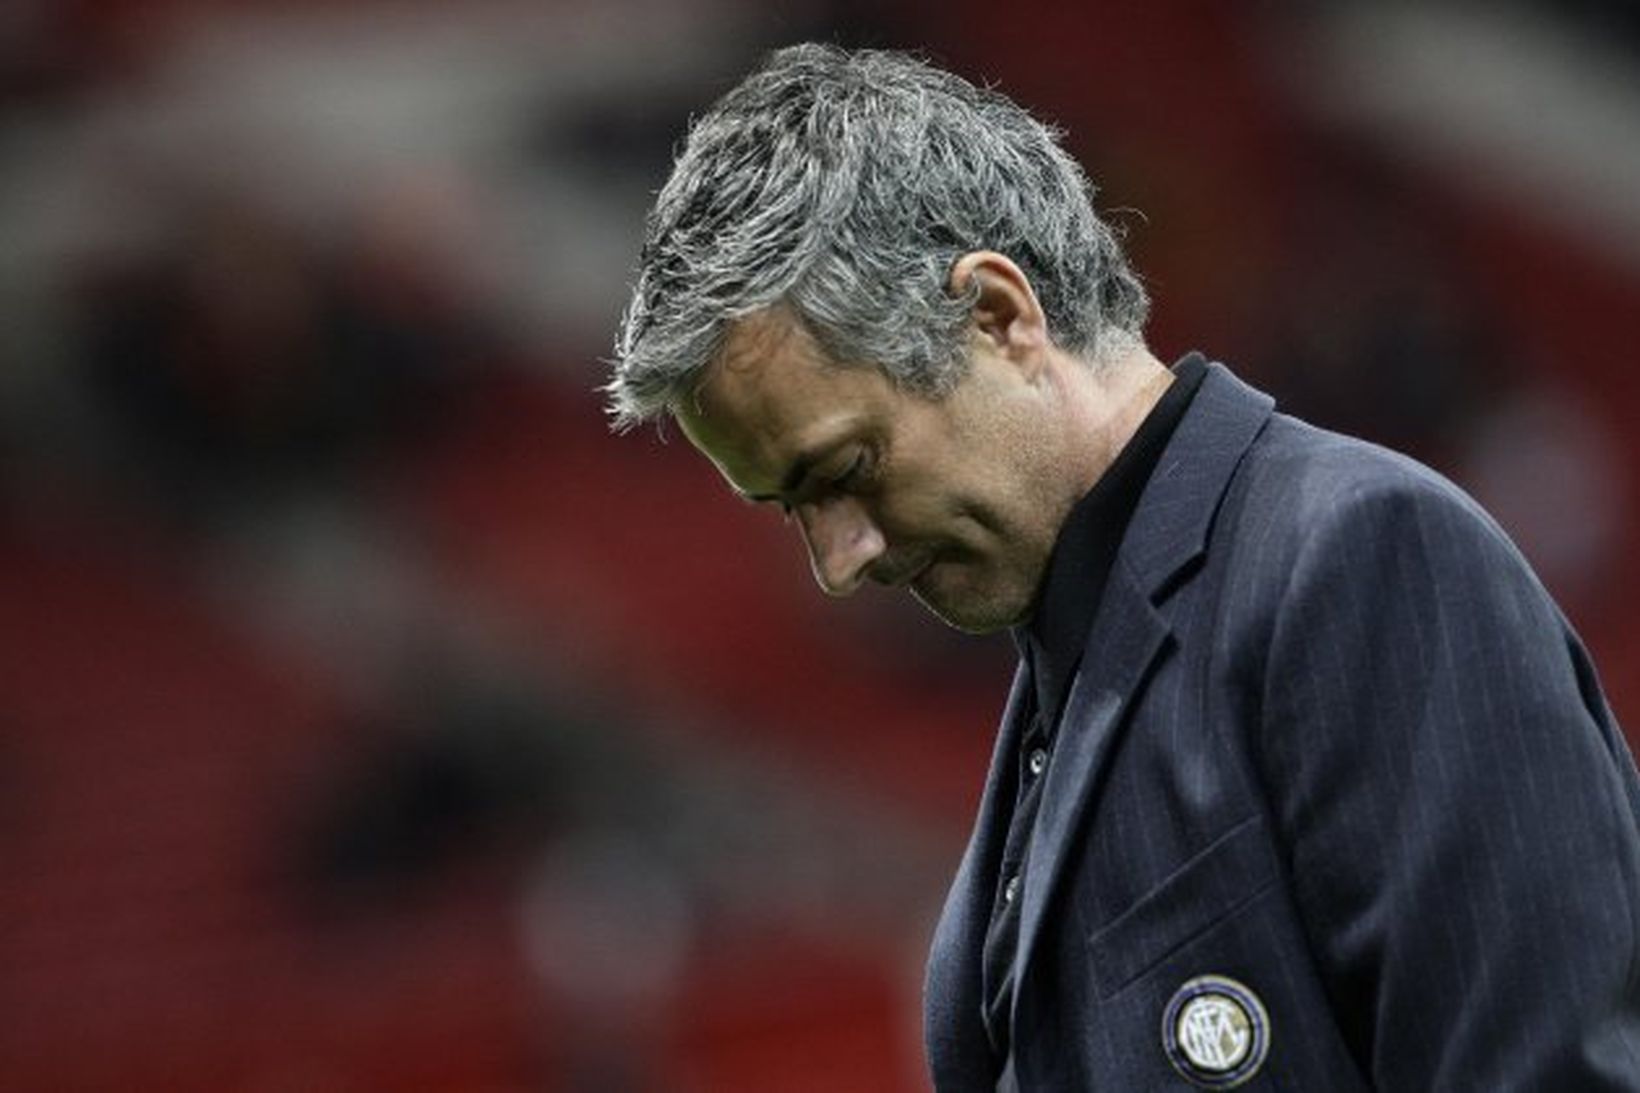 Mourinho var niðurlútur eftir tapið gegn Manchester United í gær.